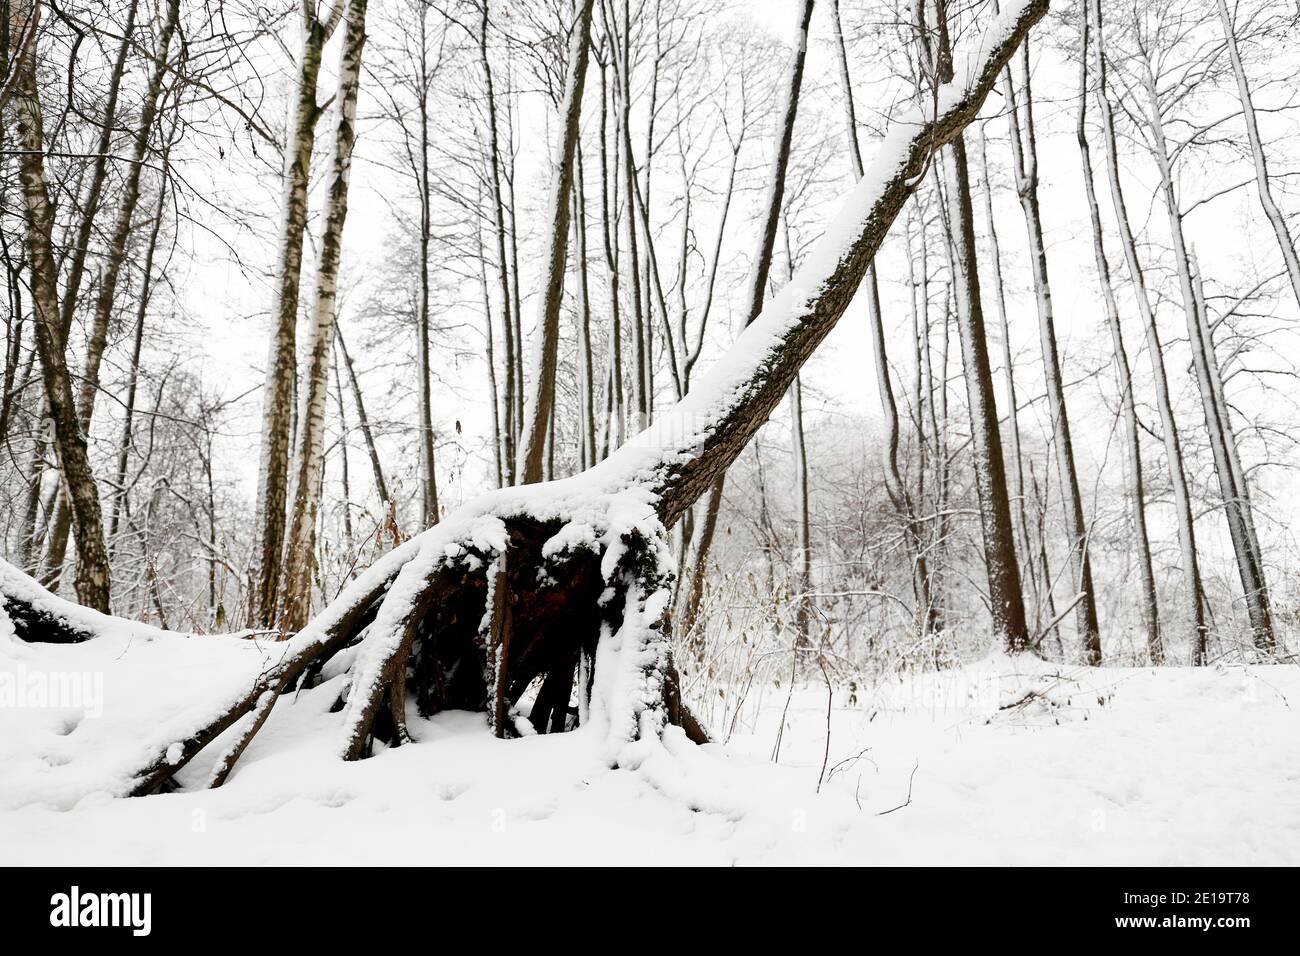 Forêt d'hiver, neige couverte arbres tombés. La nature après les chutes de neige, temps froid Banque D'Images